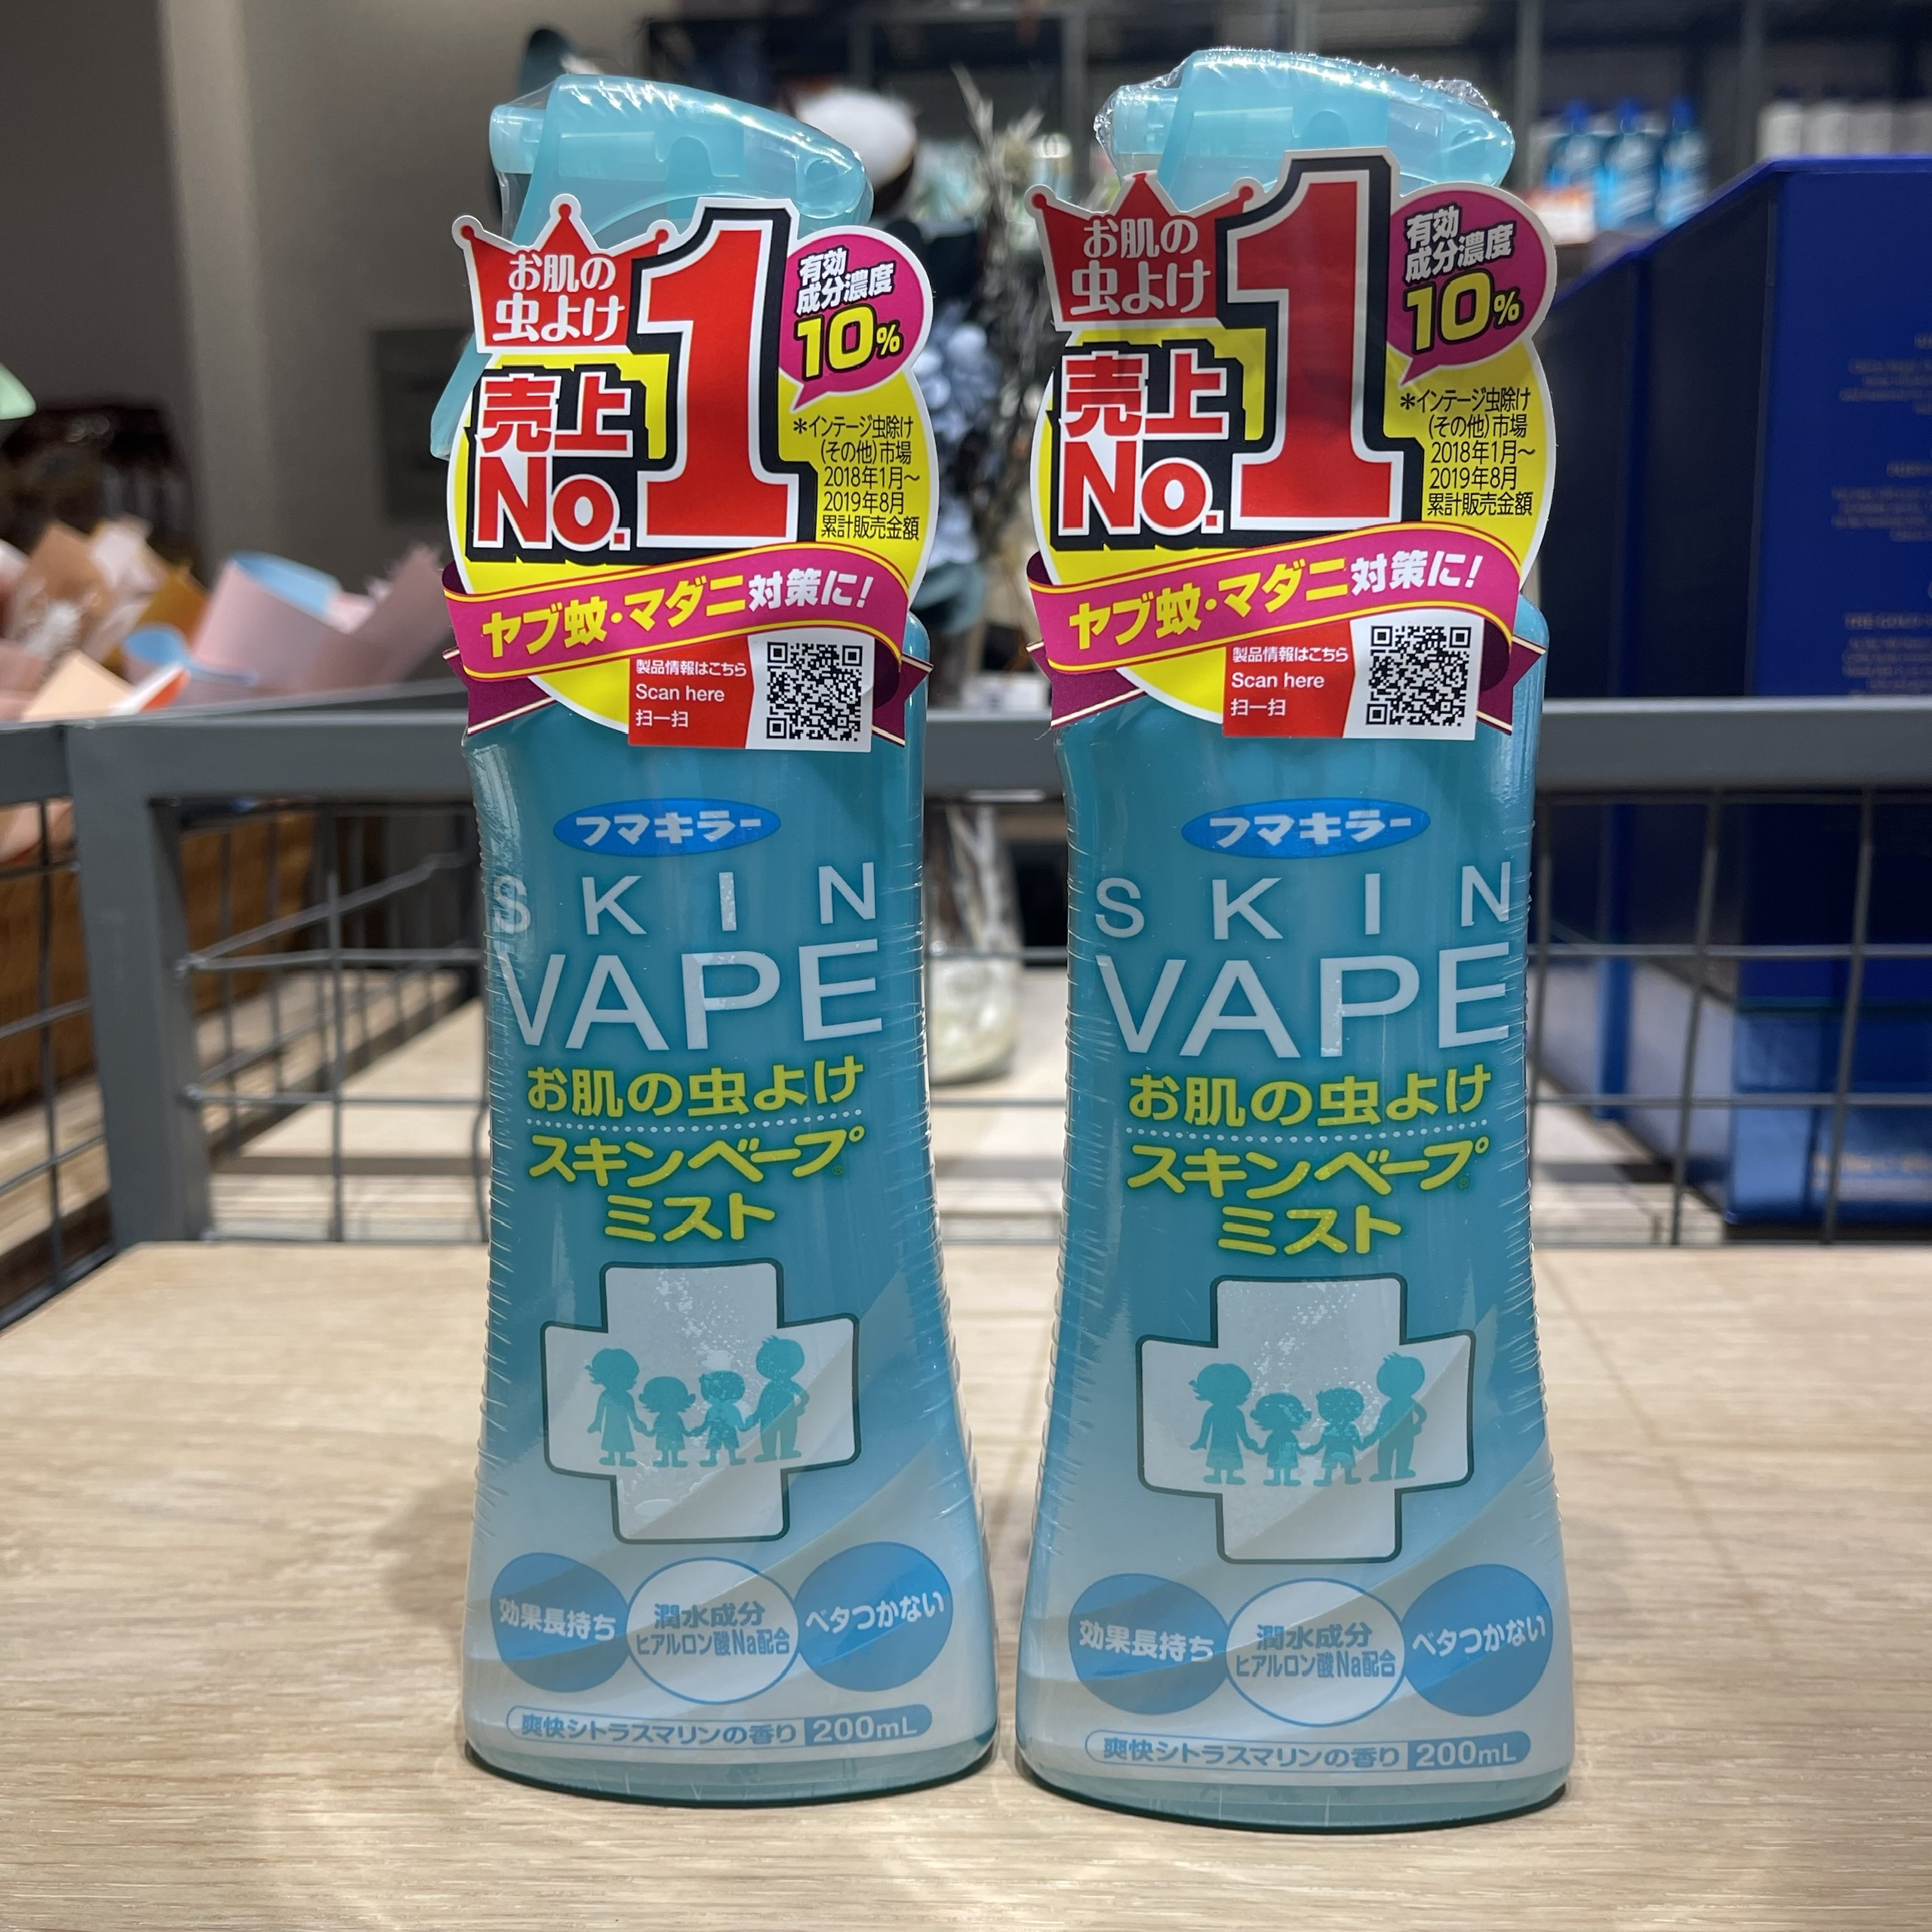 Xịt chống muỗi cho bé 200ml Skin vap.e [ Made in Japan ] An toàn cho trẻ em, không chứa các chất tẩm màu